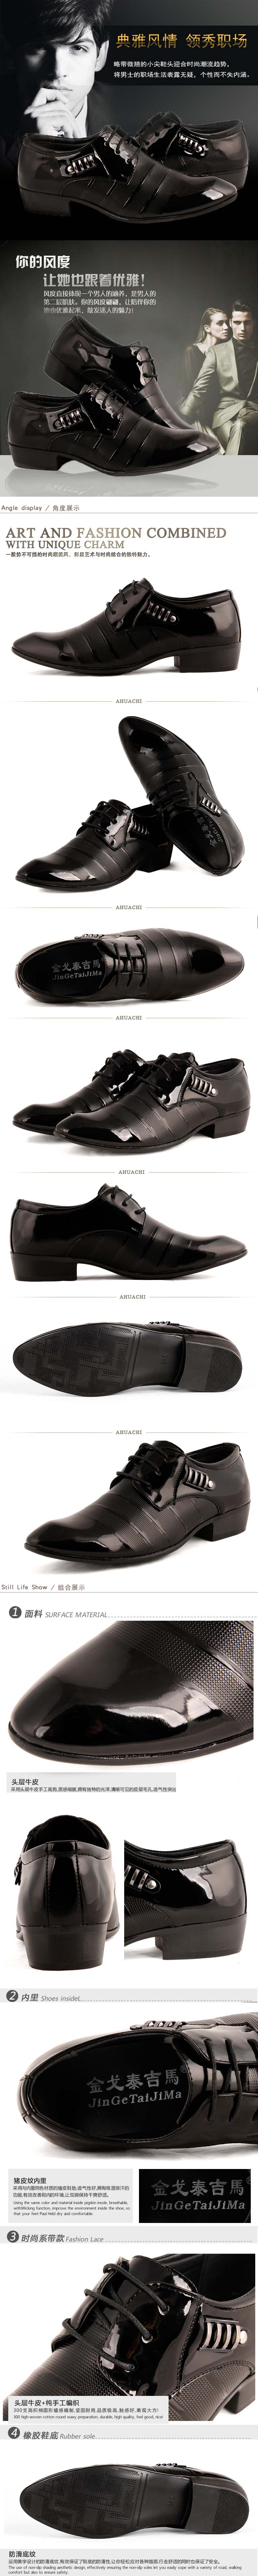 jual sepatu kantor pria bahan kulit PU kualitas premium dengan desain yang menawan model terbaru dan harga yang relatif murah